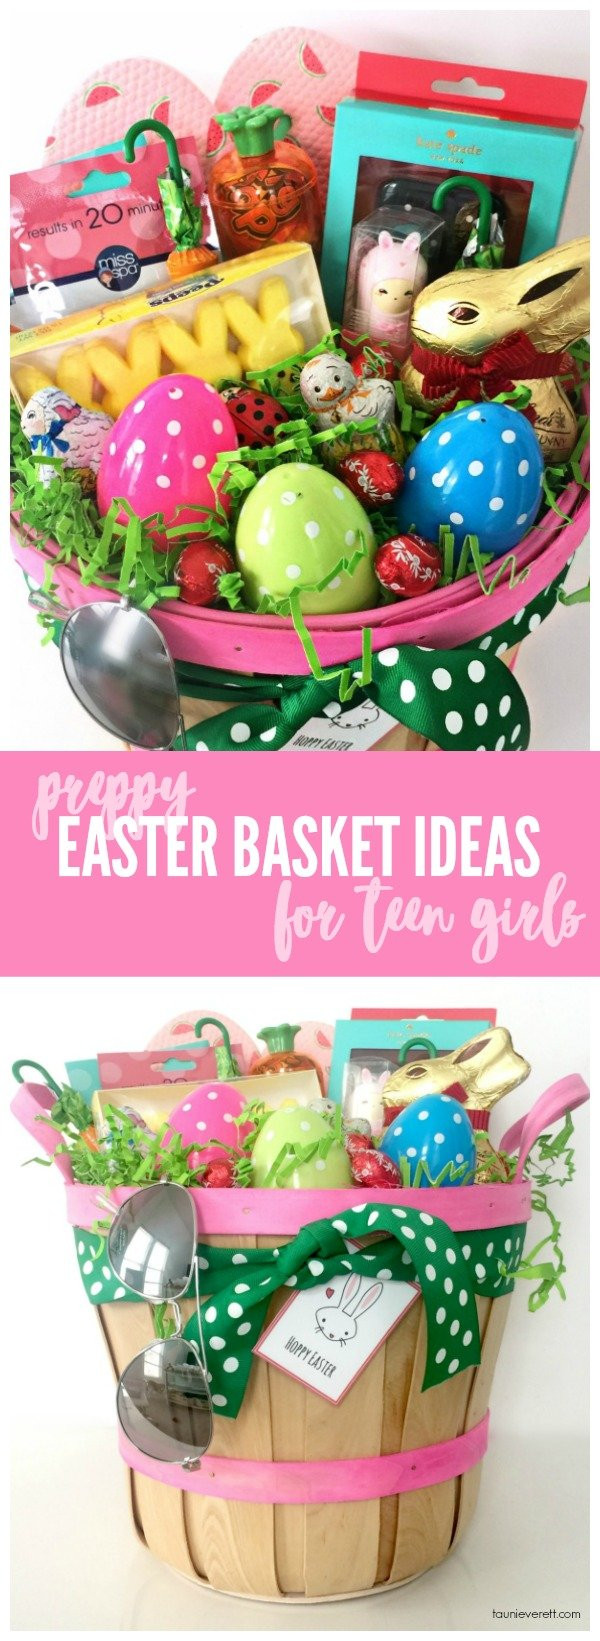 Easter Ideas For Girls
 Preppy Easter Basket Ideas for Teen Girls